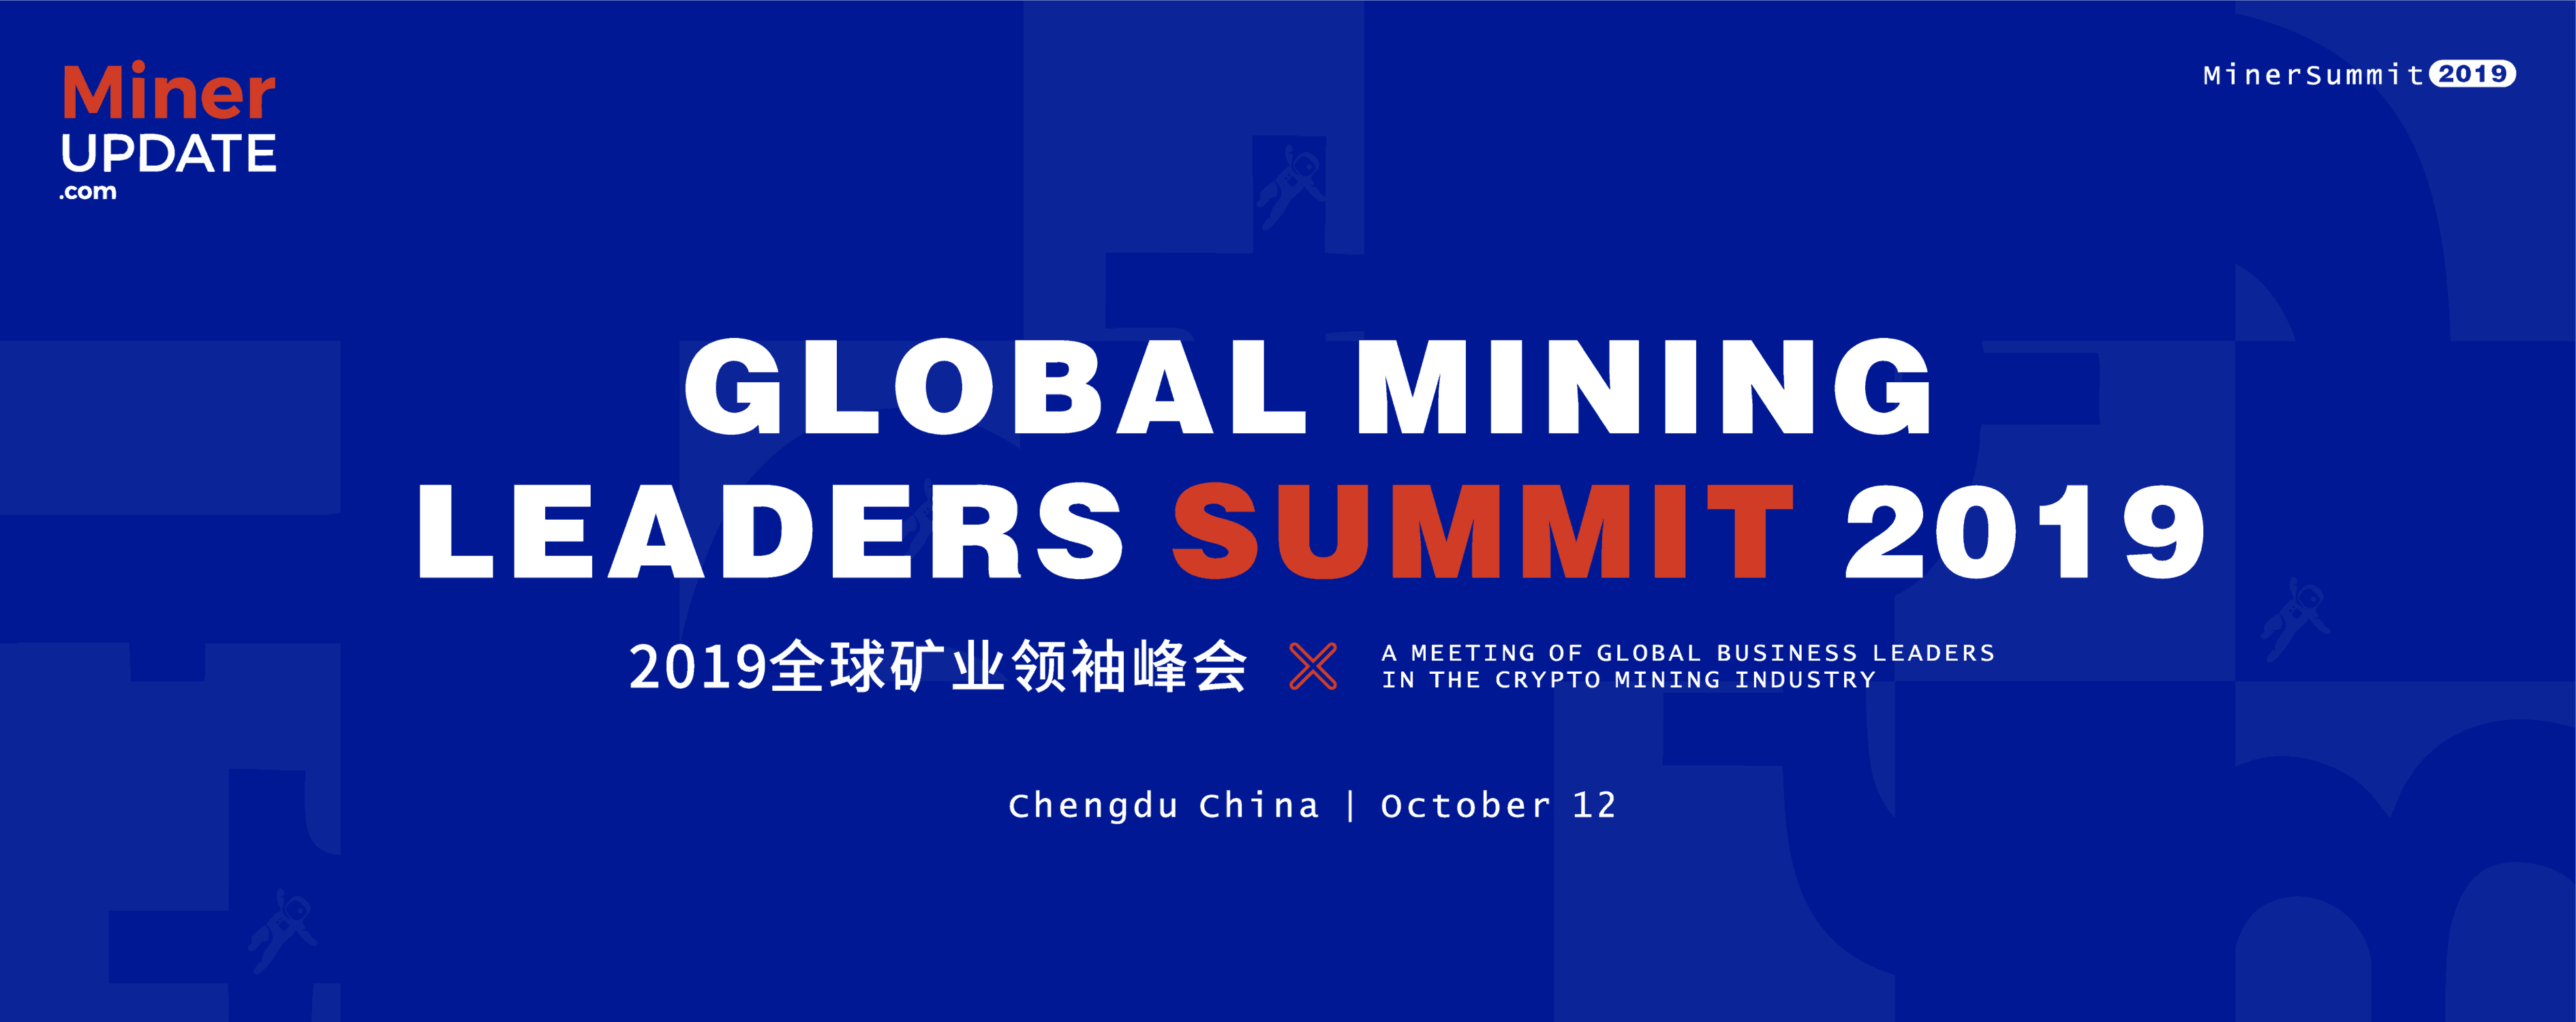 global mining leaders summit 2019